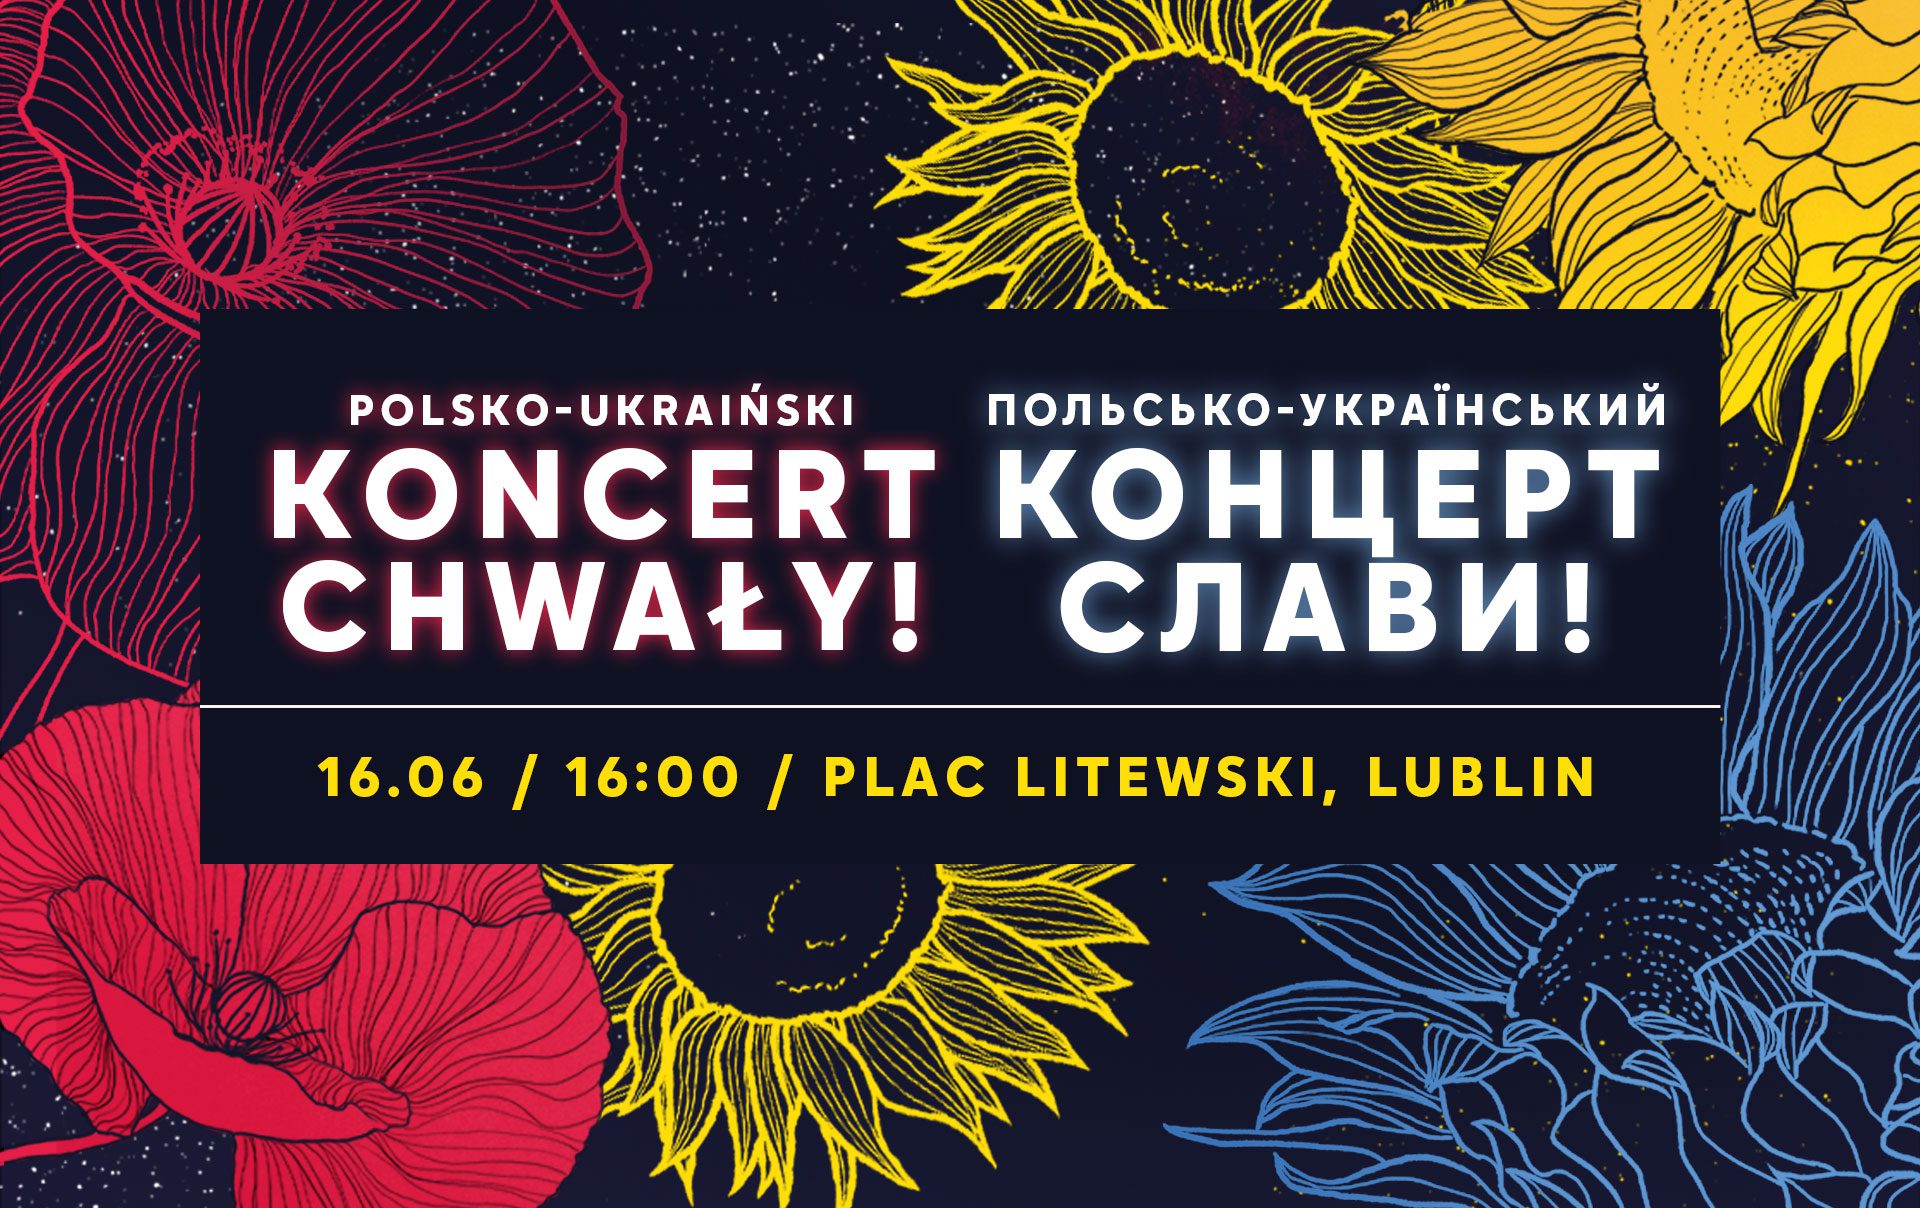 POLSKO-UKRAIŃSKI KONCERT CHWAŁY w Lublinie!